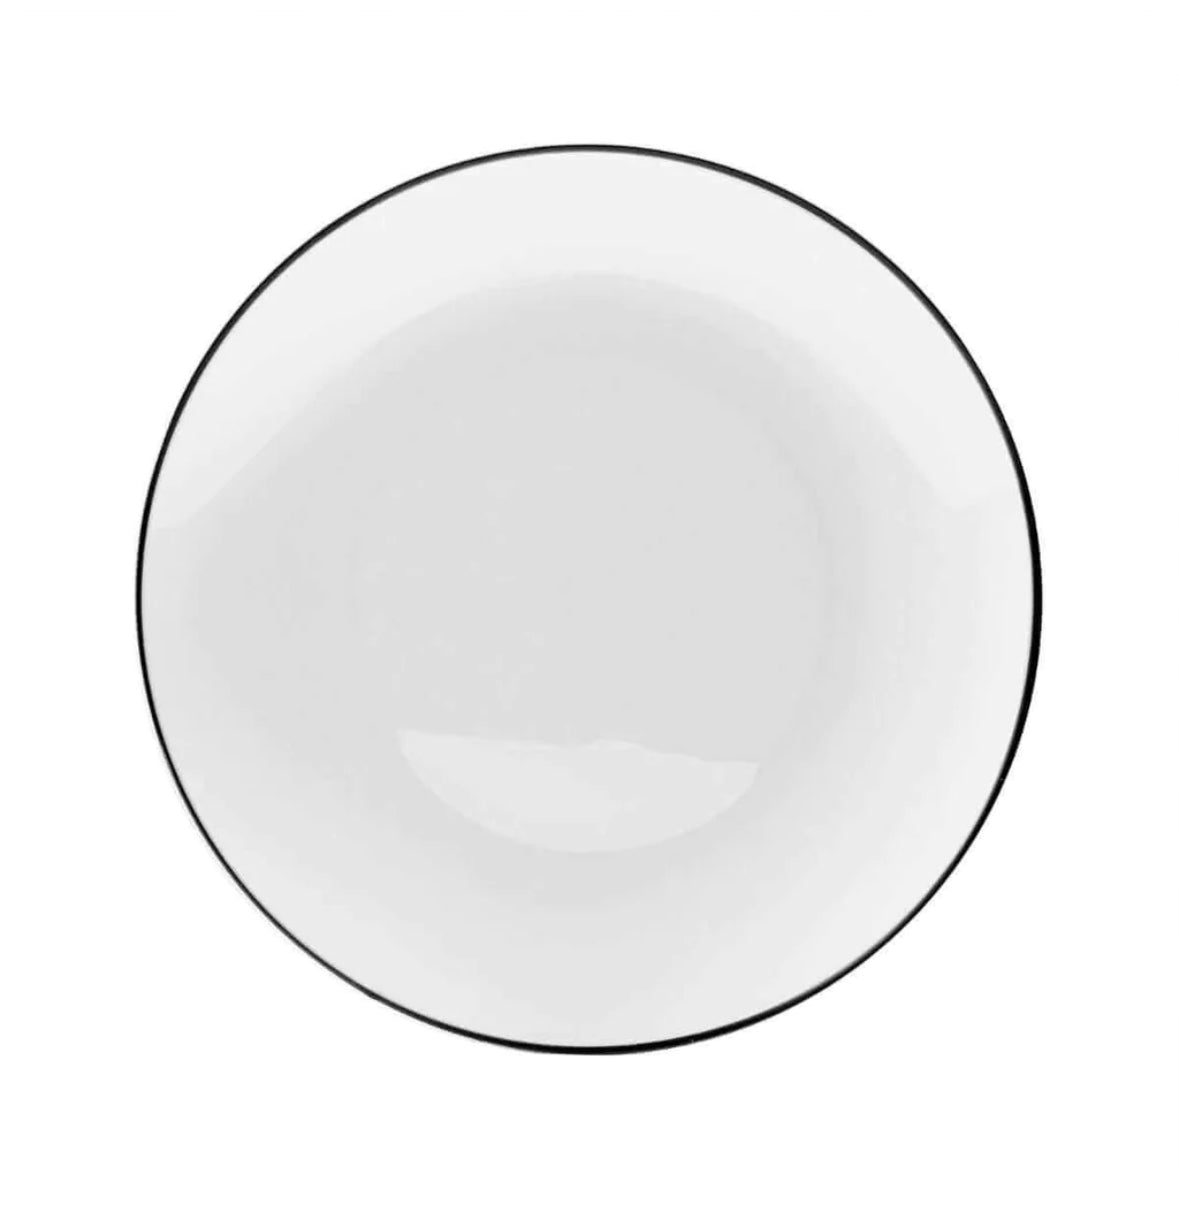 White & Black Rim Design Plastic Plates 10 Ct